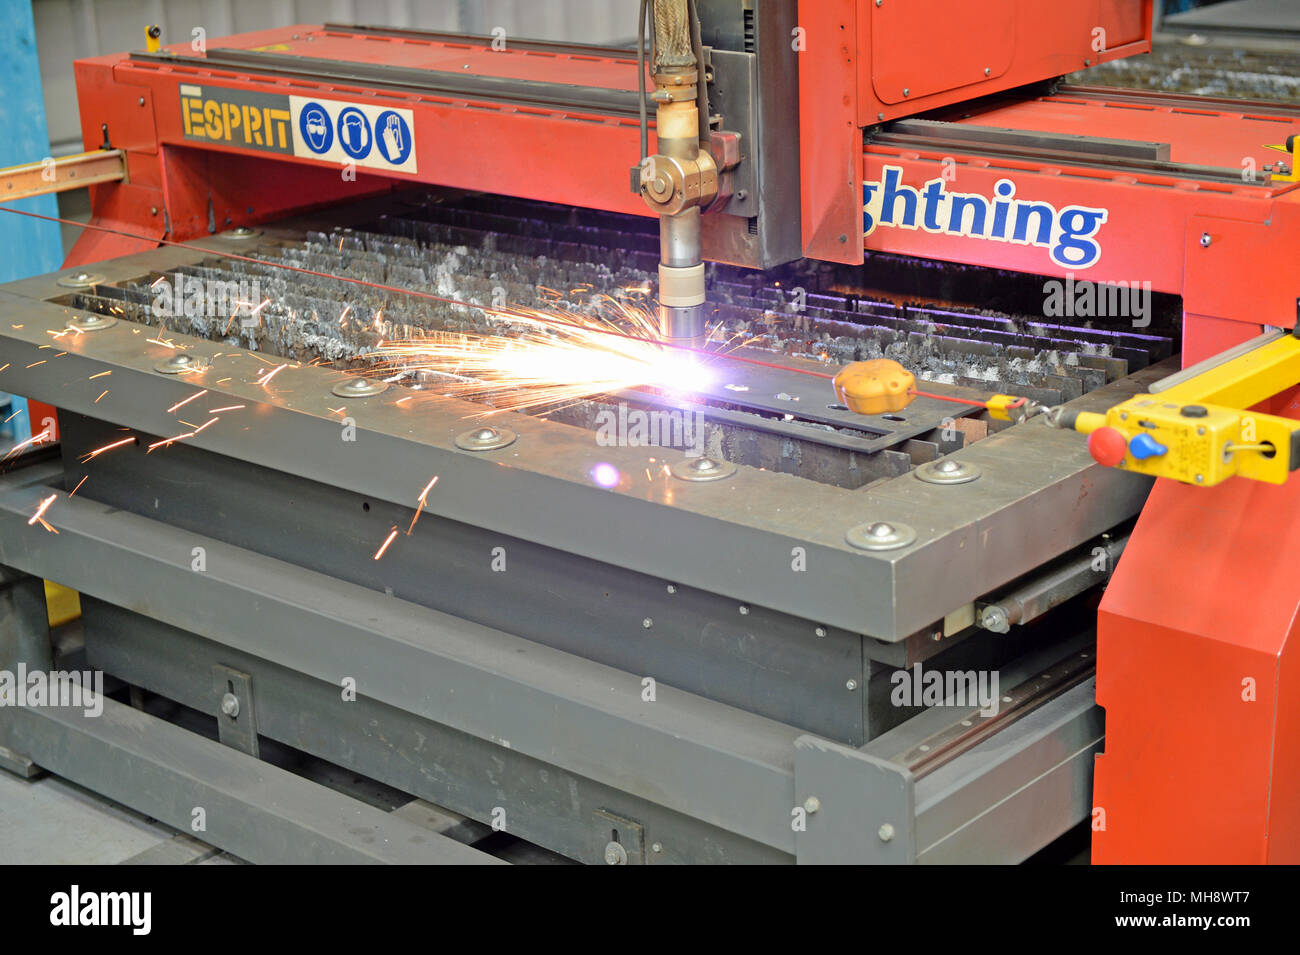 Mann bei der Arbeit auf einer metallenen Plasmaschneidemaschine in einer Werkstatt Stockfoto